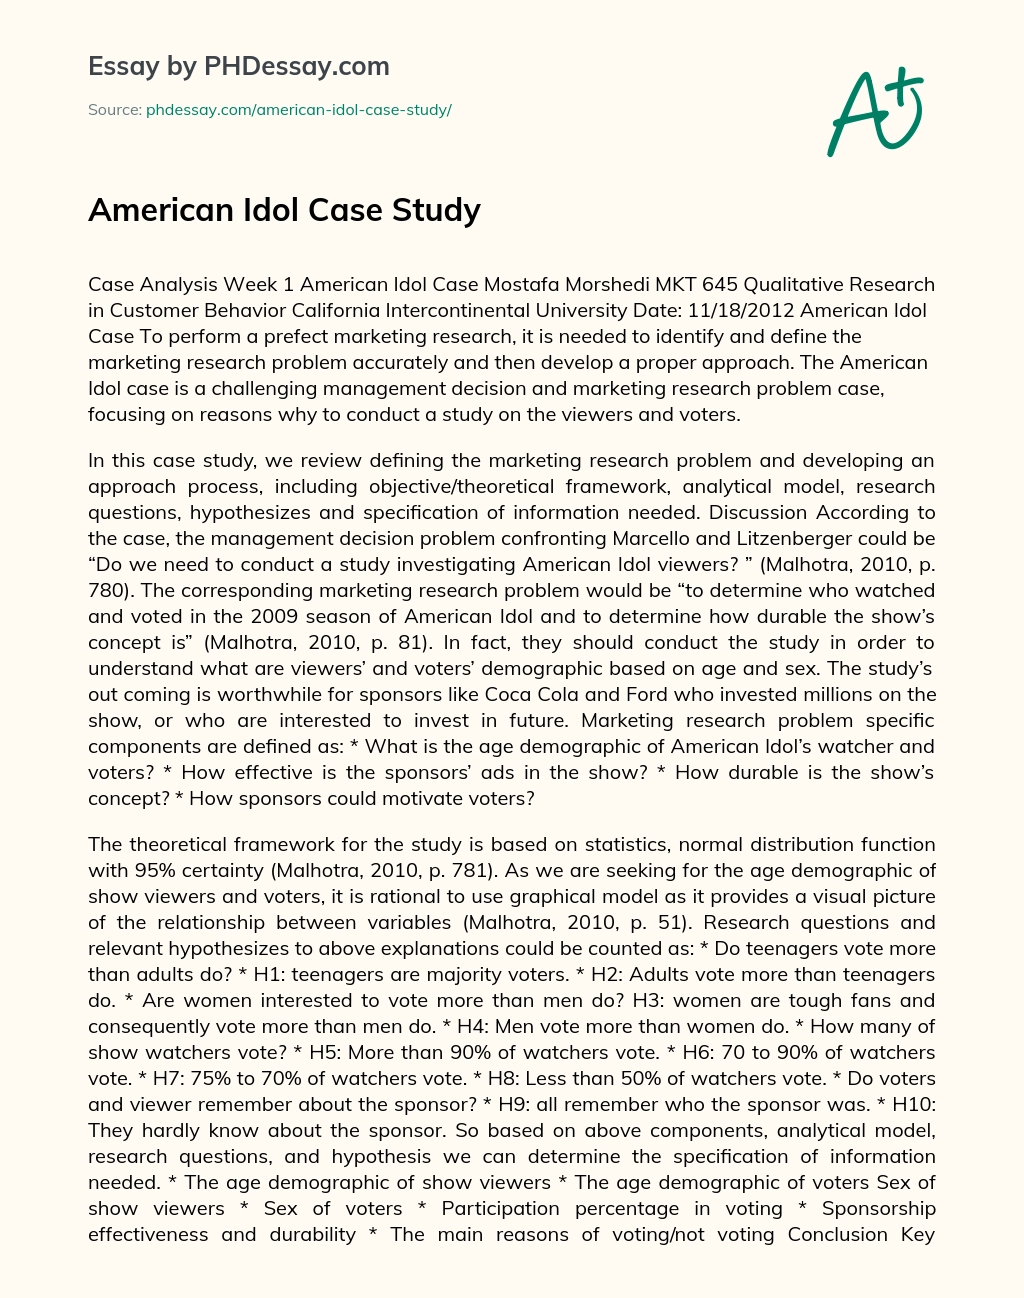 American Idol Case Study essay